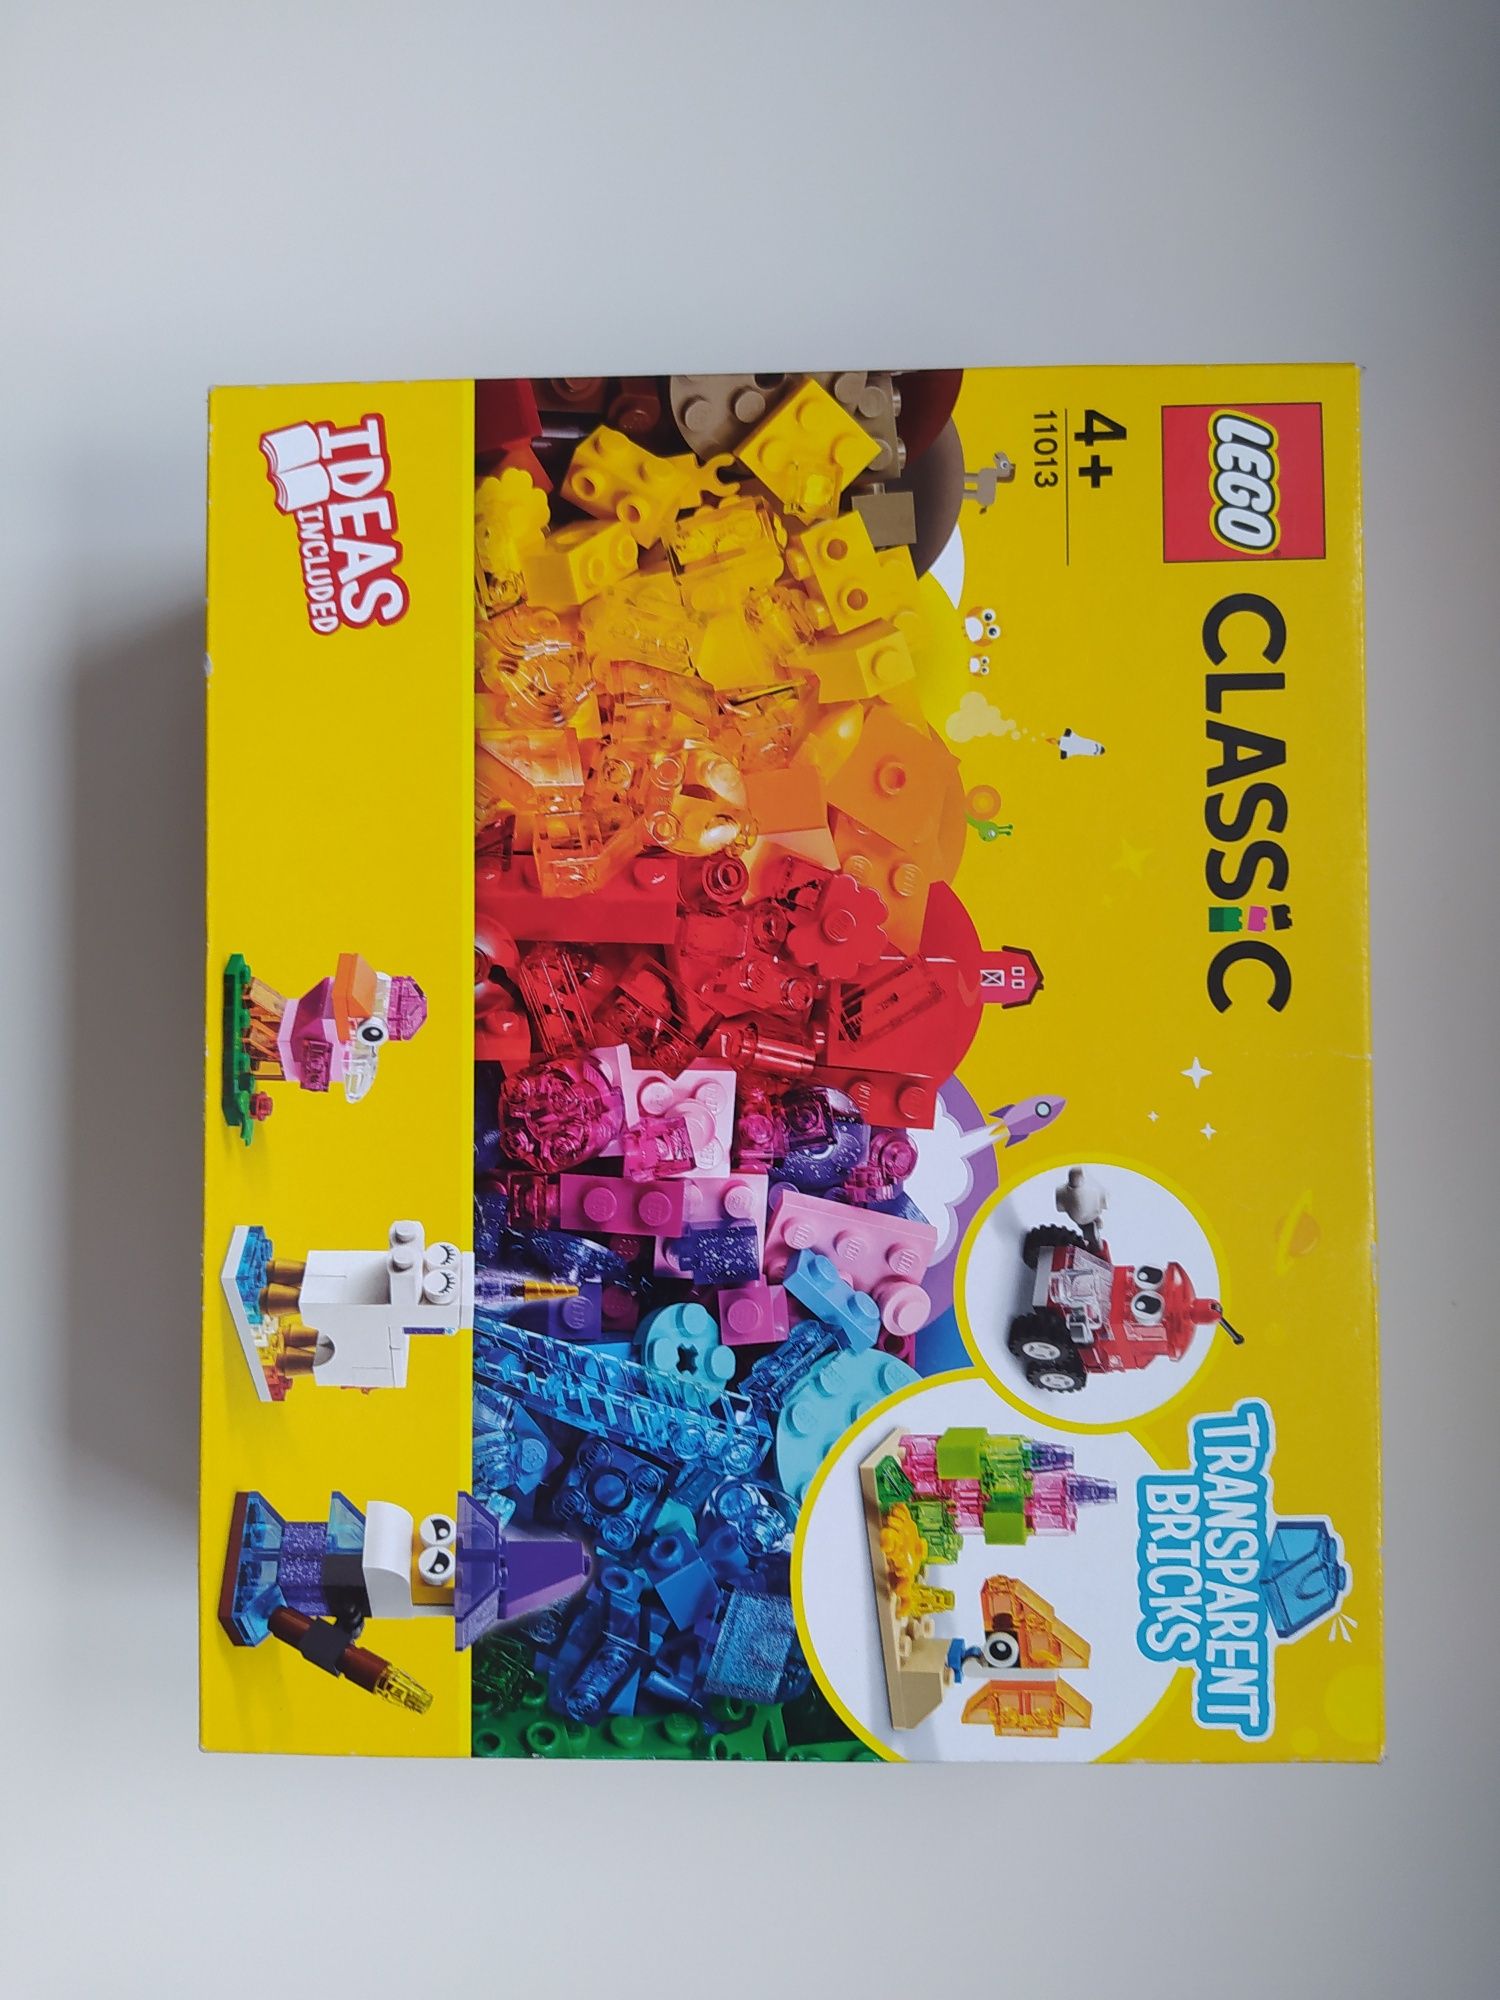 Lego 11013 transparent block